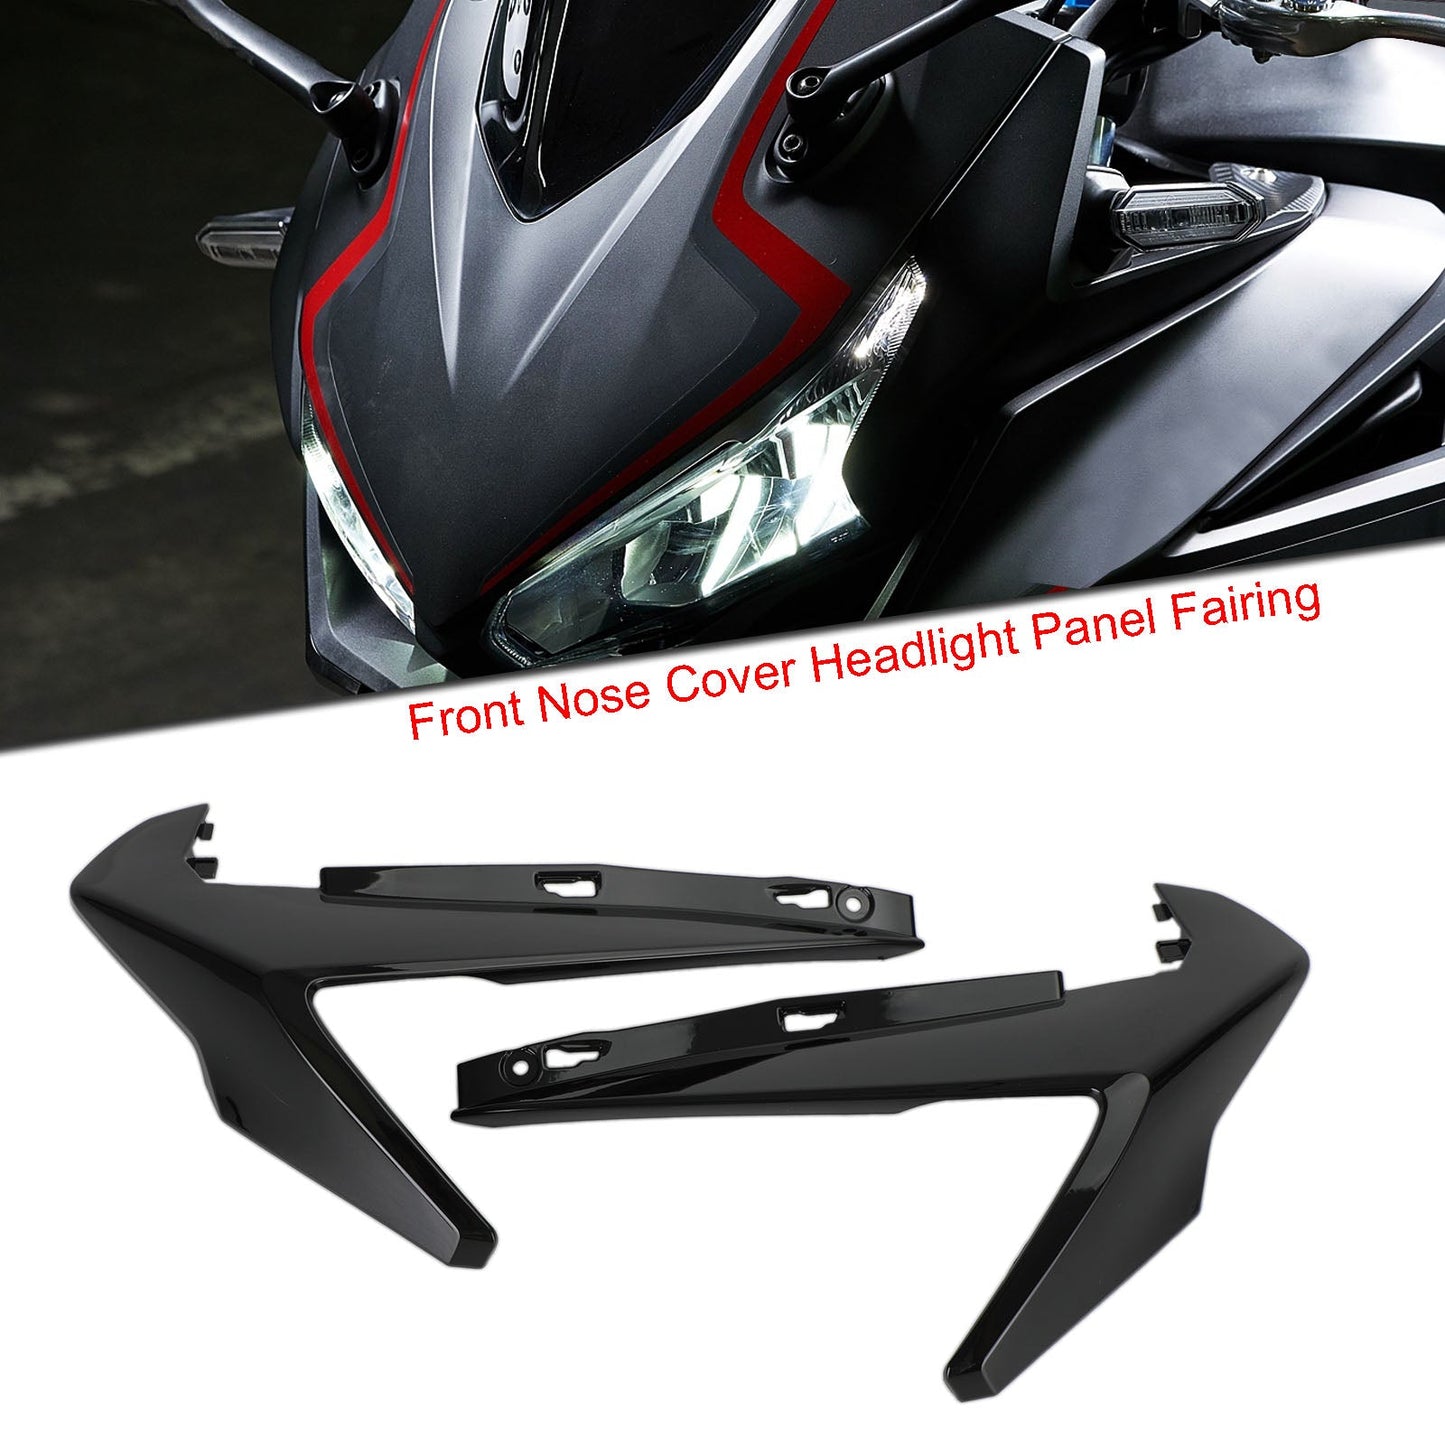 Front Nose Cover Headlight Panel Fairing For Honda CBR500R 2019-2021 Black